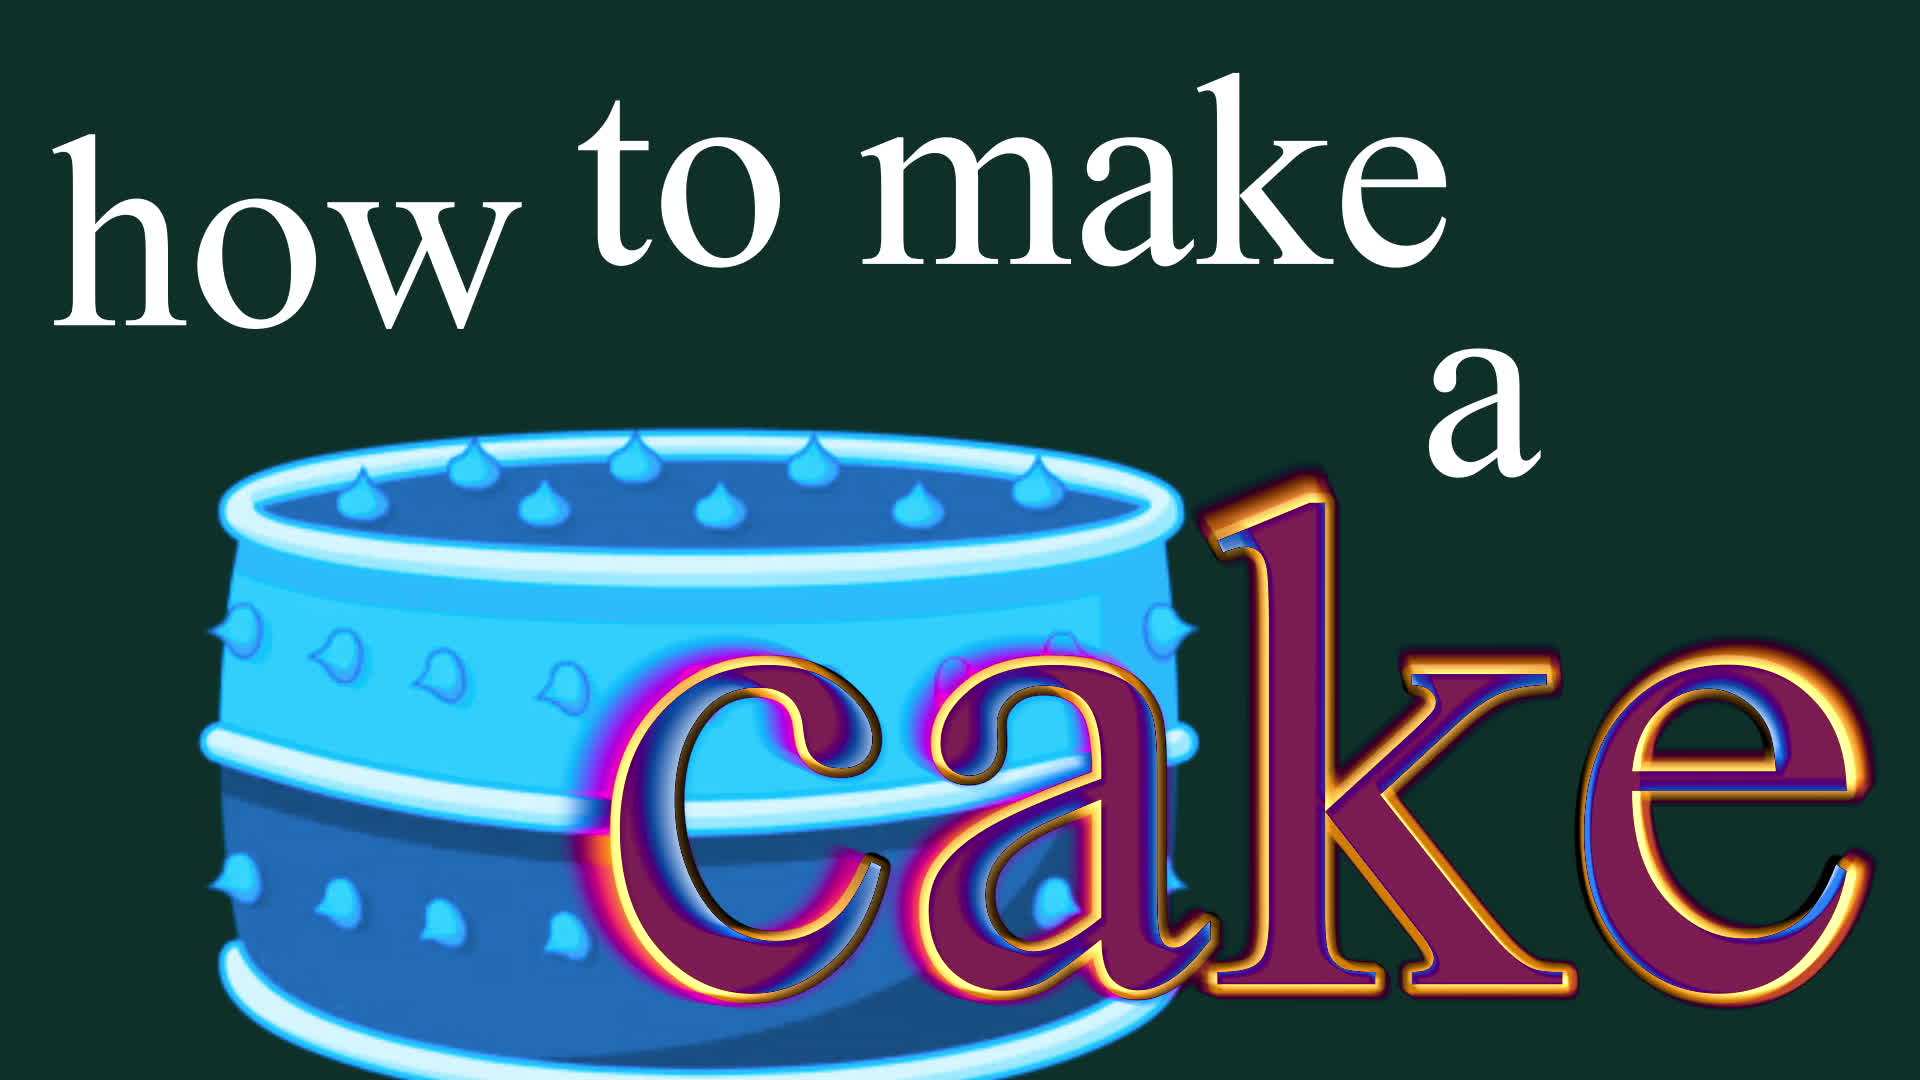 thursday how to make a cake